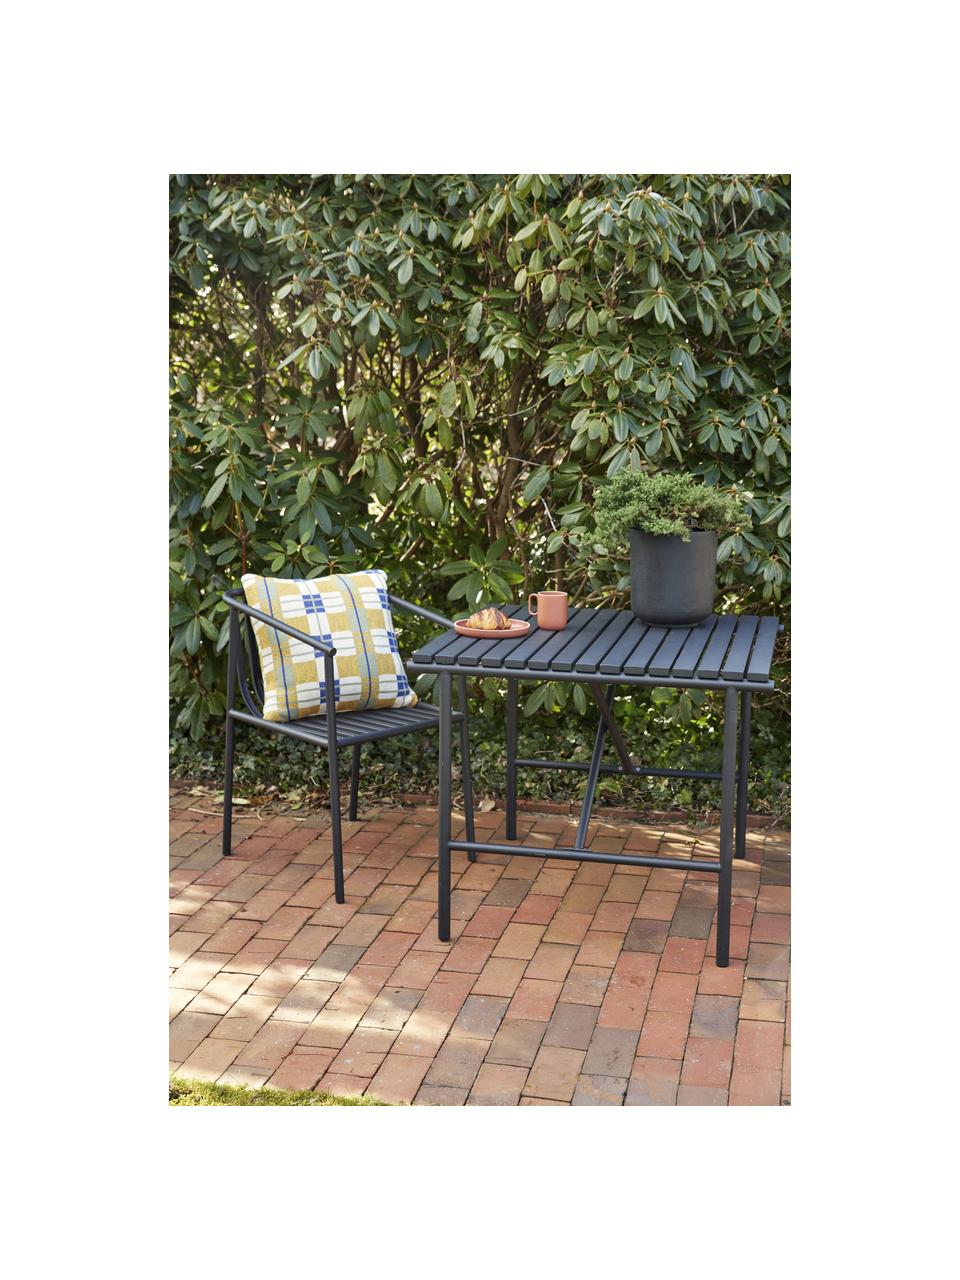 Záhradná stolička Villa, Nehrdzavejúca oceľ, potiahnutá, Čierna, Š 53 x H 59 cm